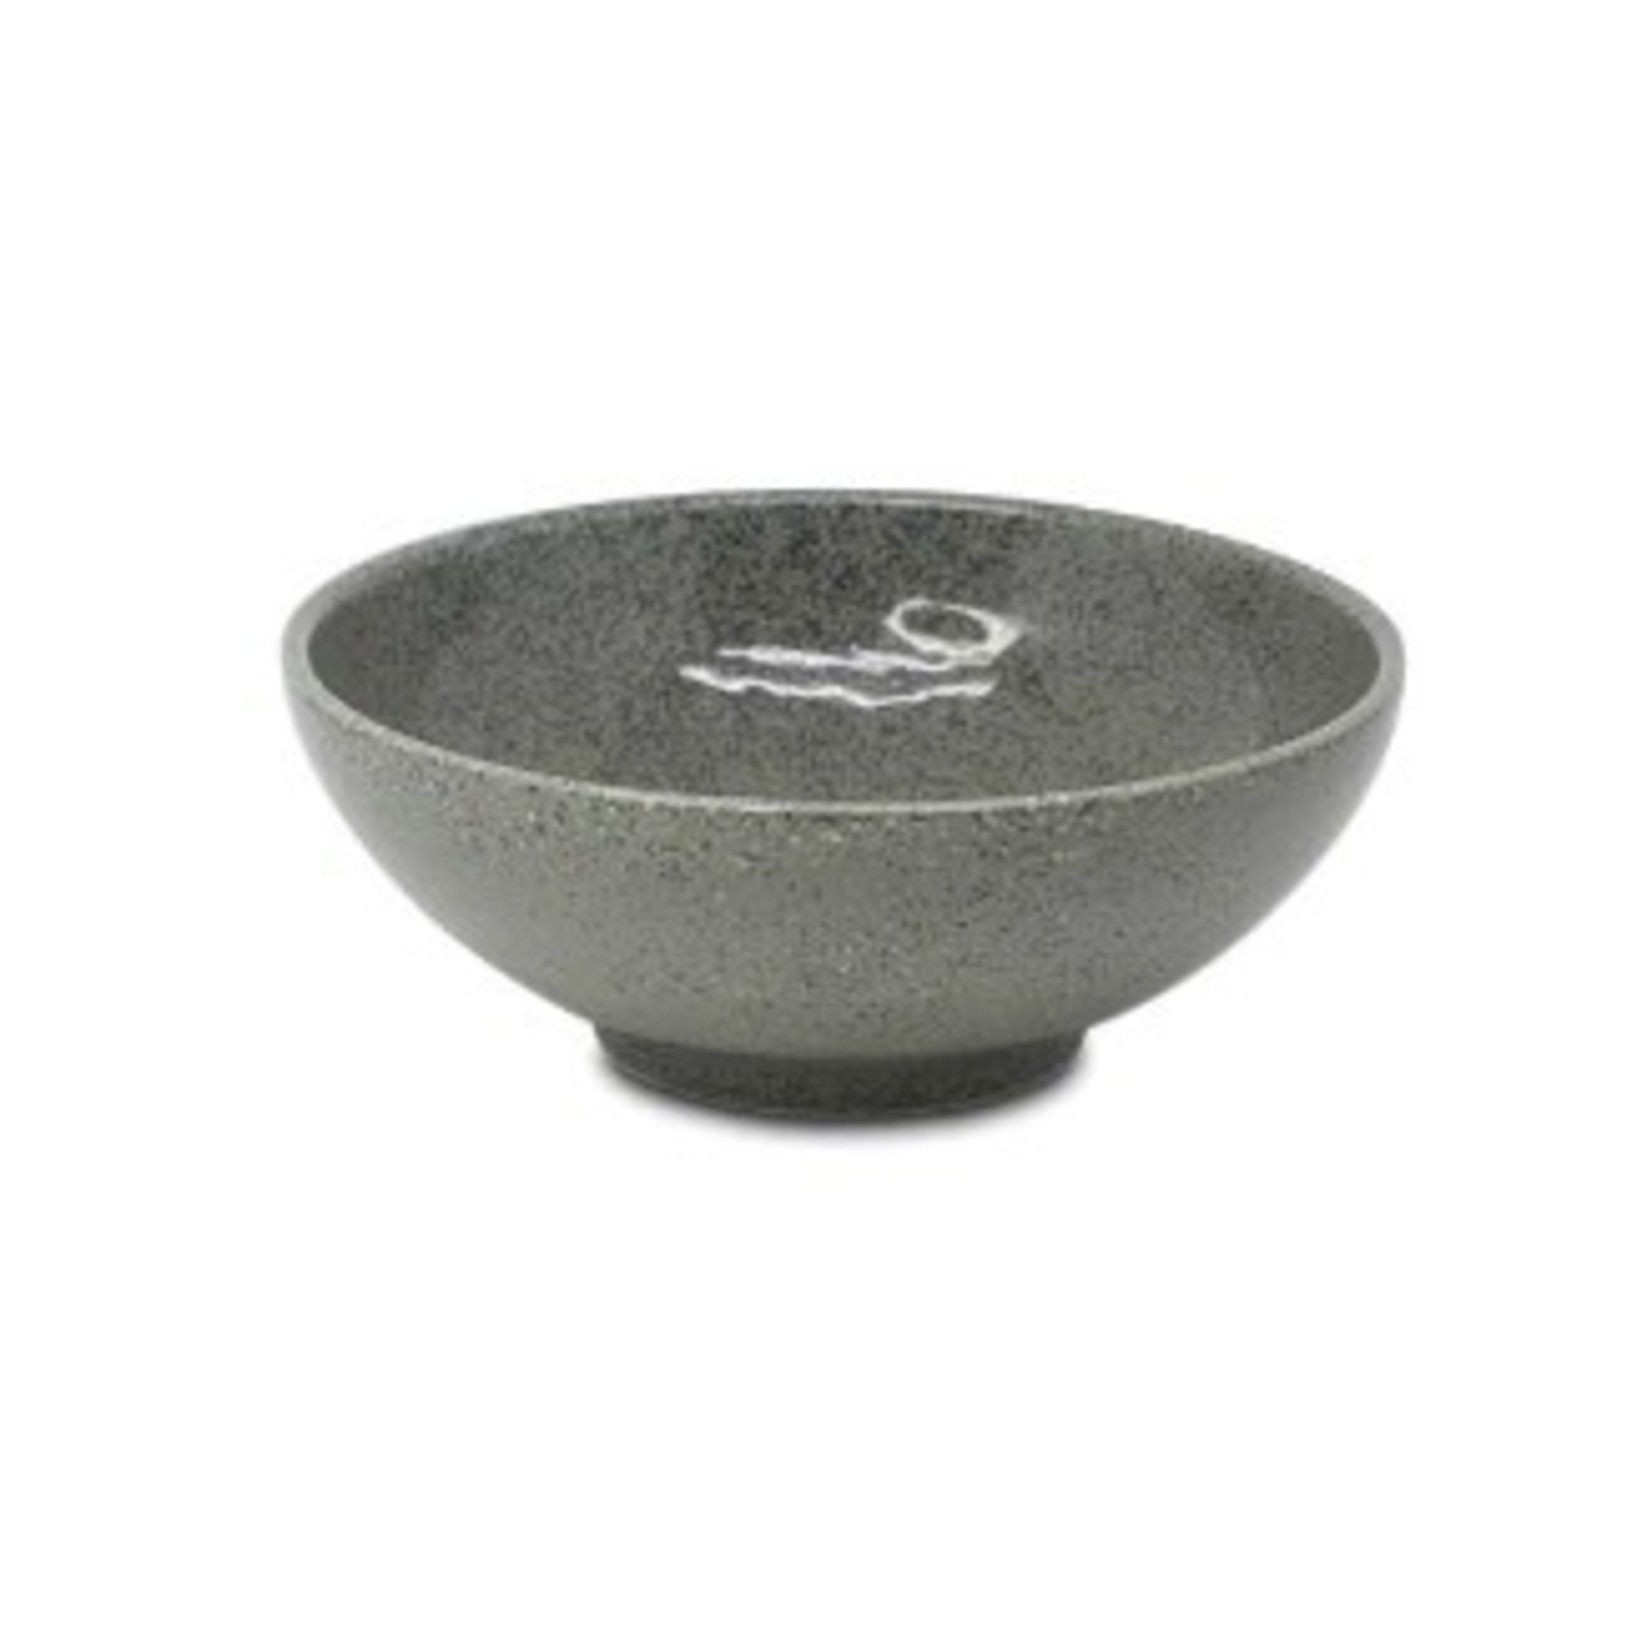 EMF EMF Hanten Japanese Porcelain Bowl 8.4" - Grey